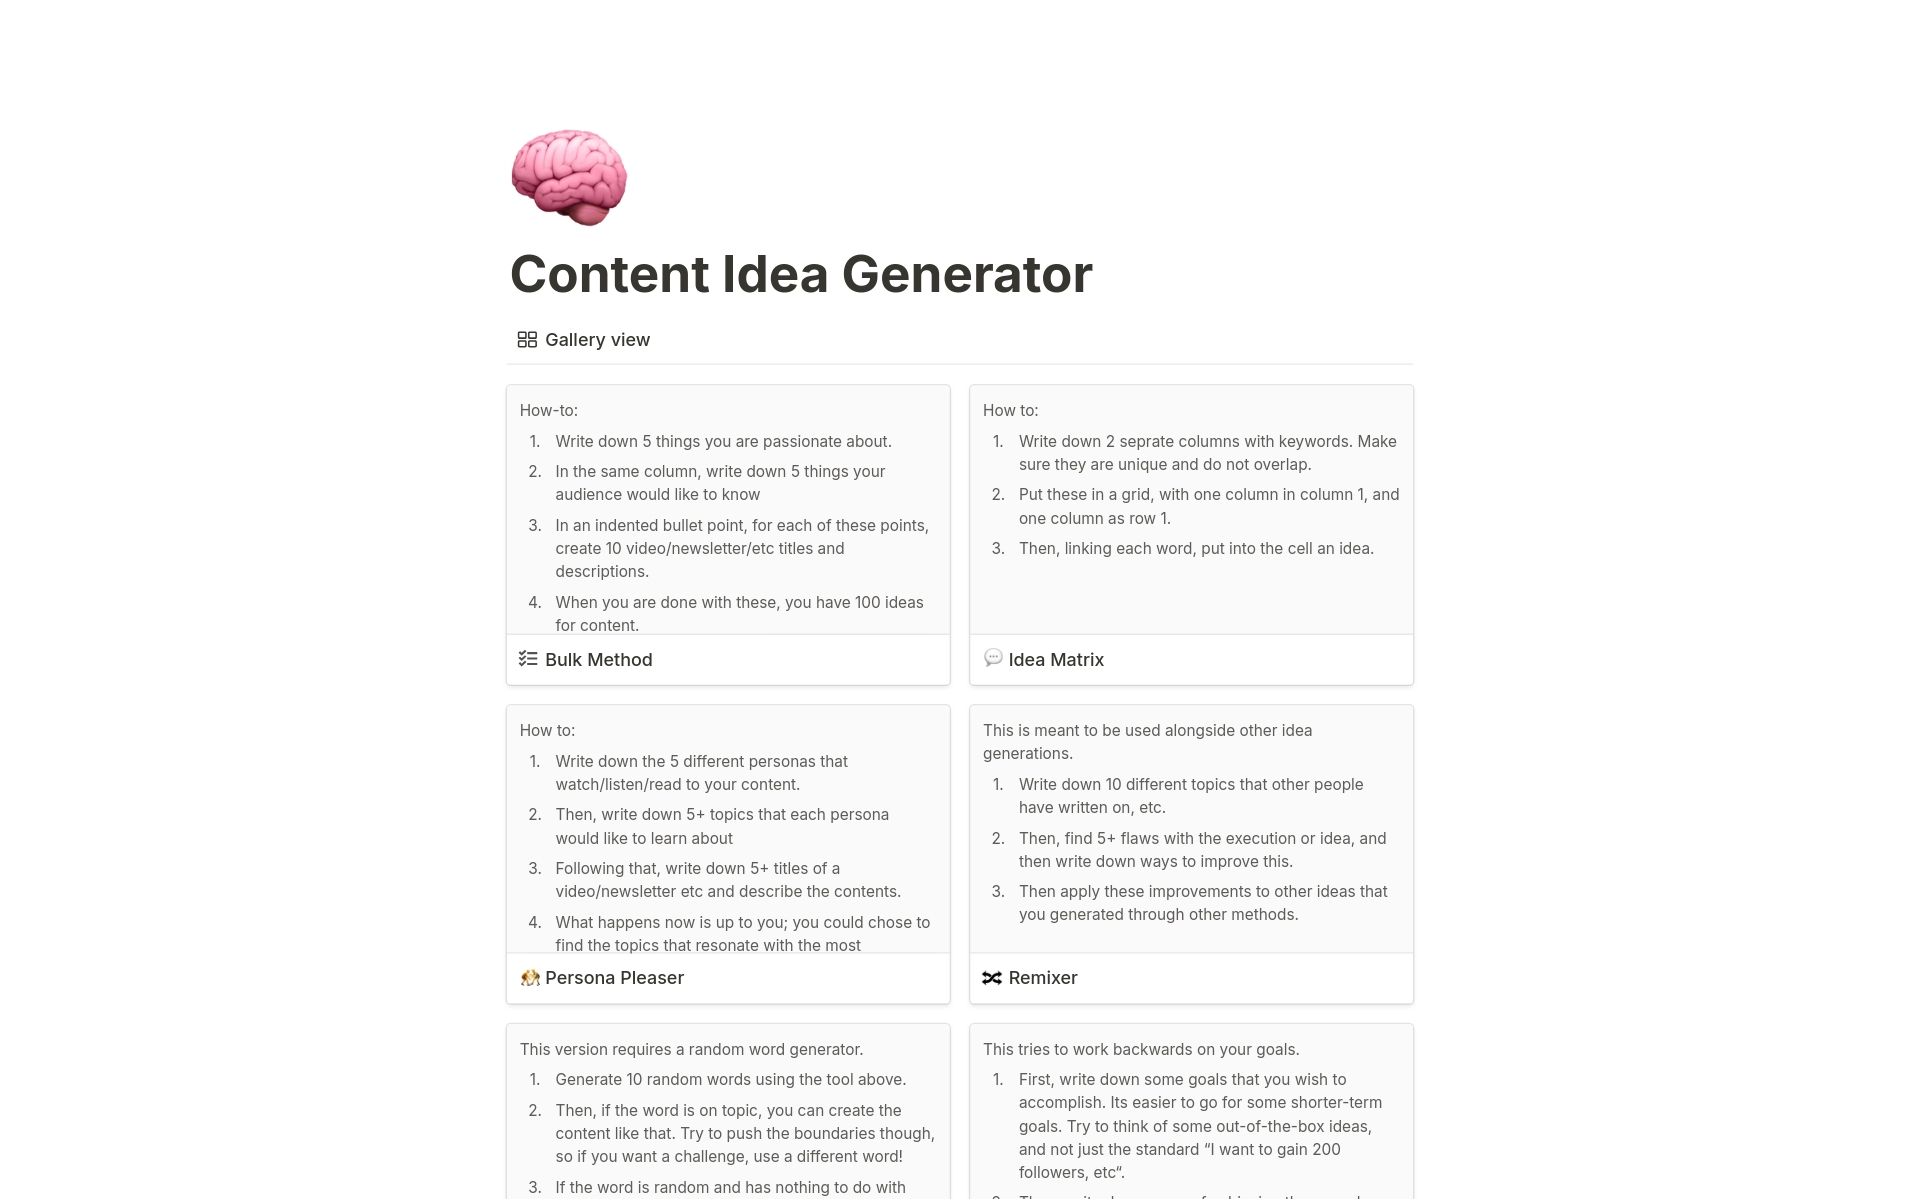 Uma prévia do modelo para Content Idea Generation 